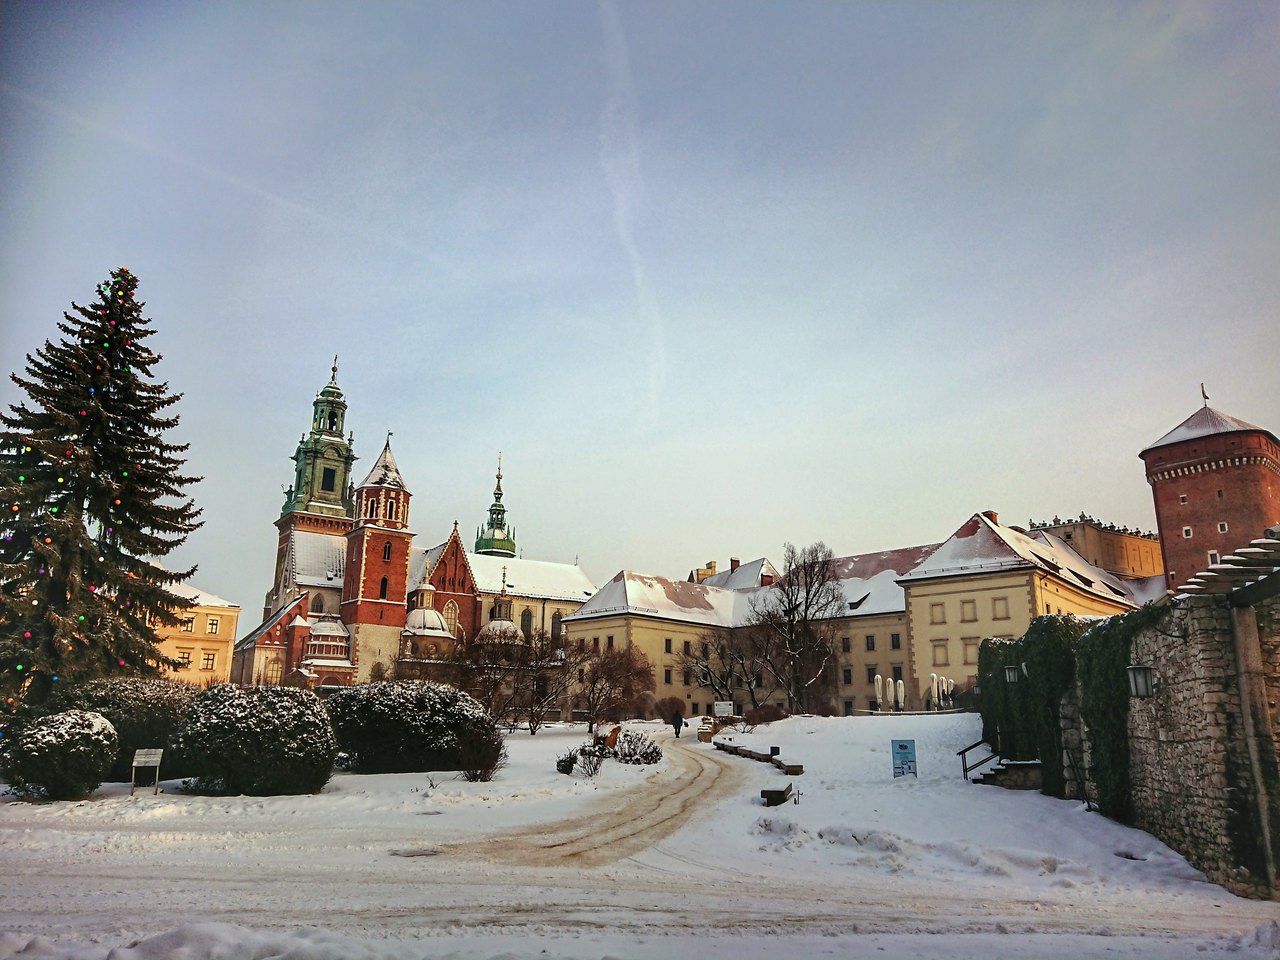 Widok na zimowy Wawel.